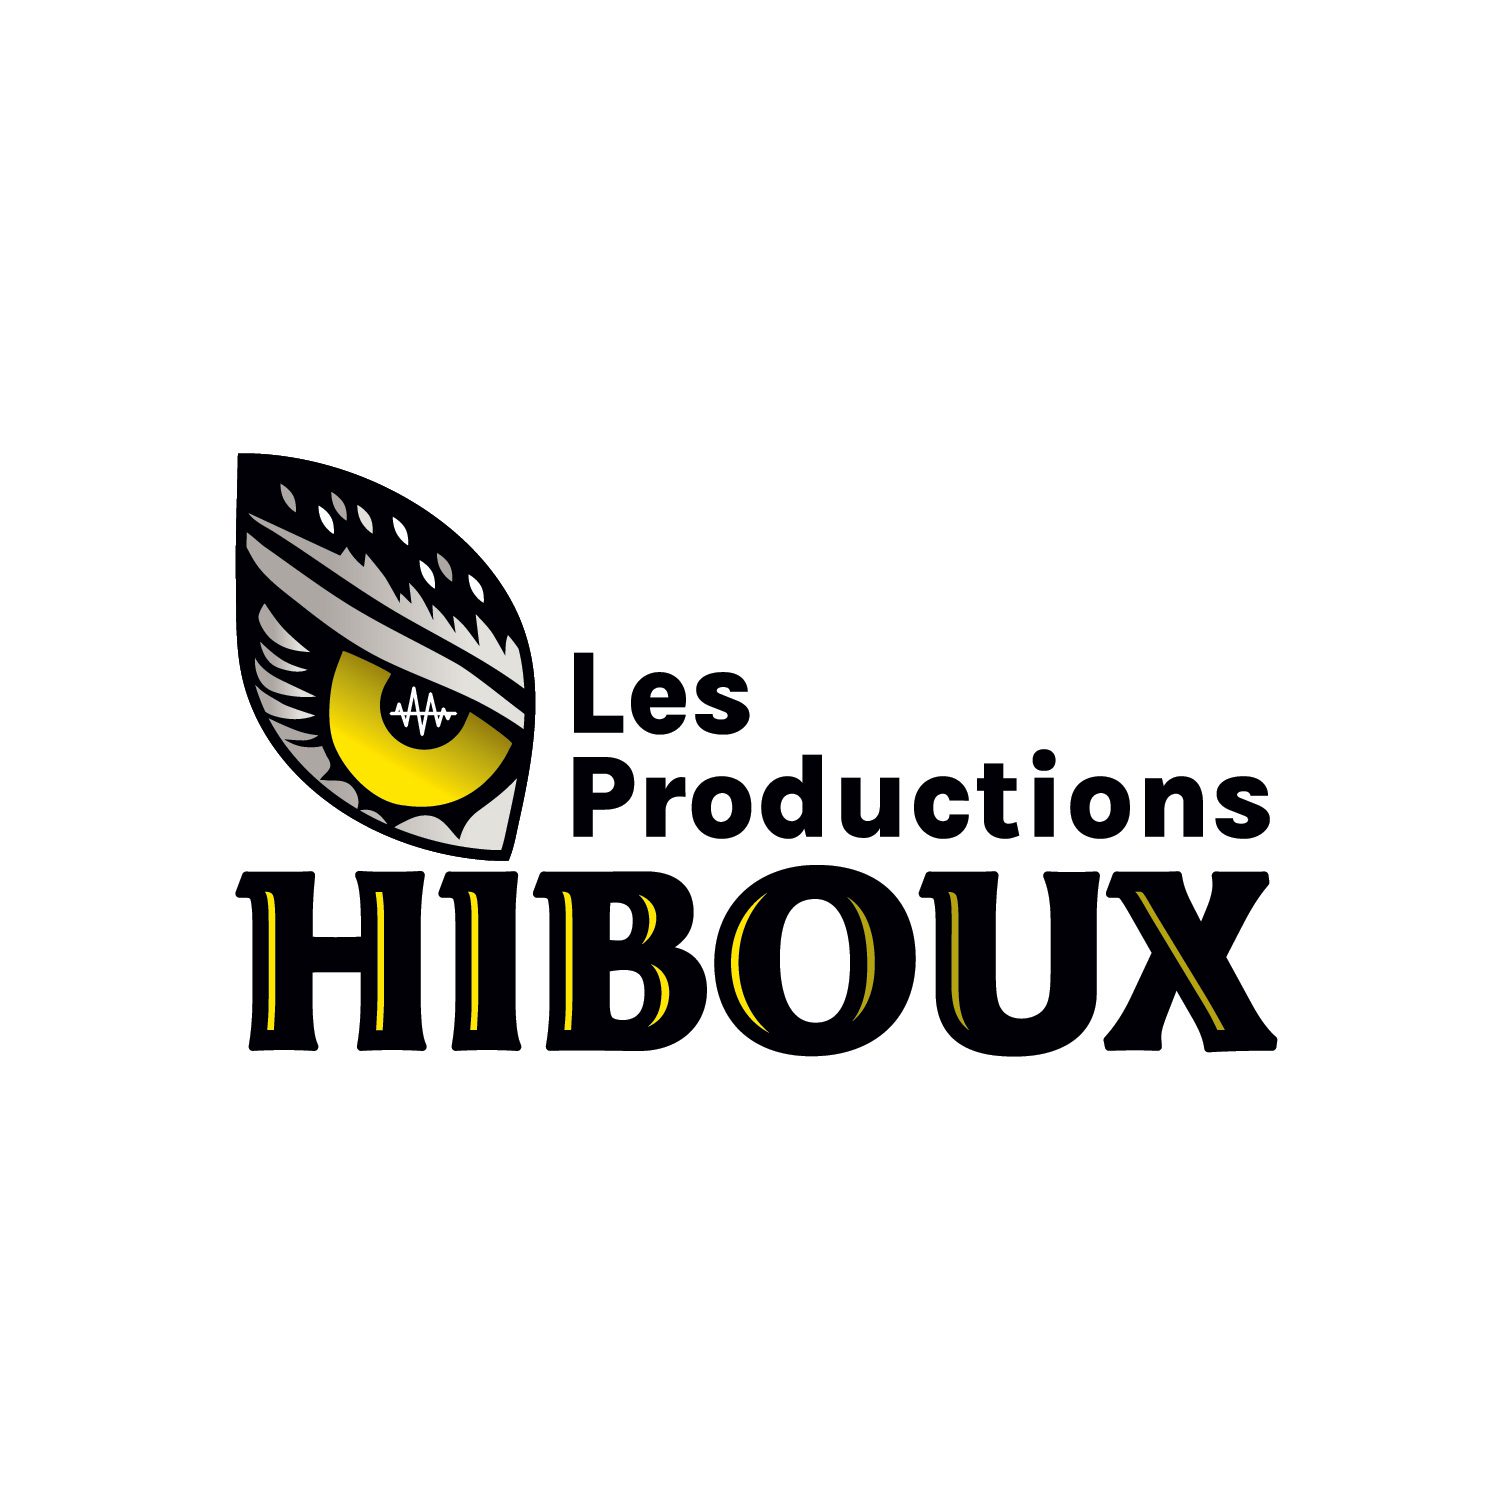 Les productions Hibou